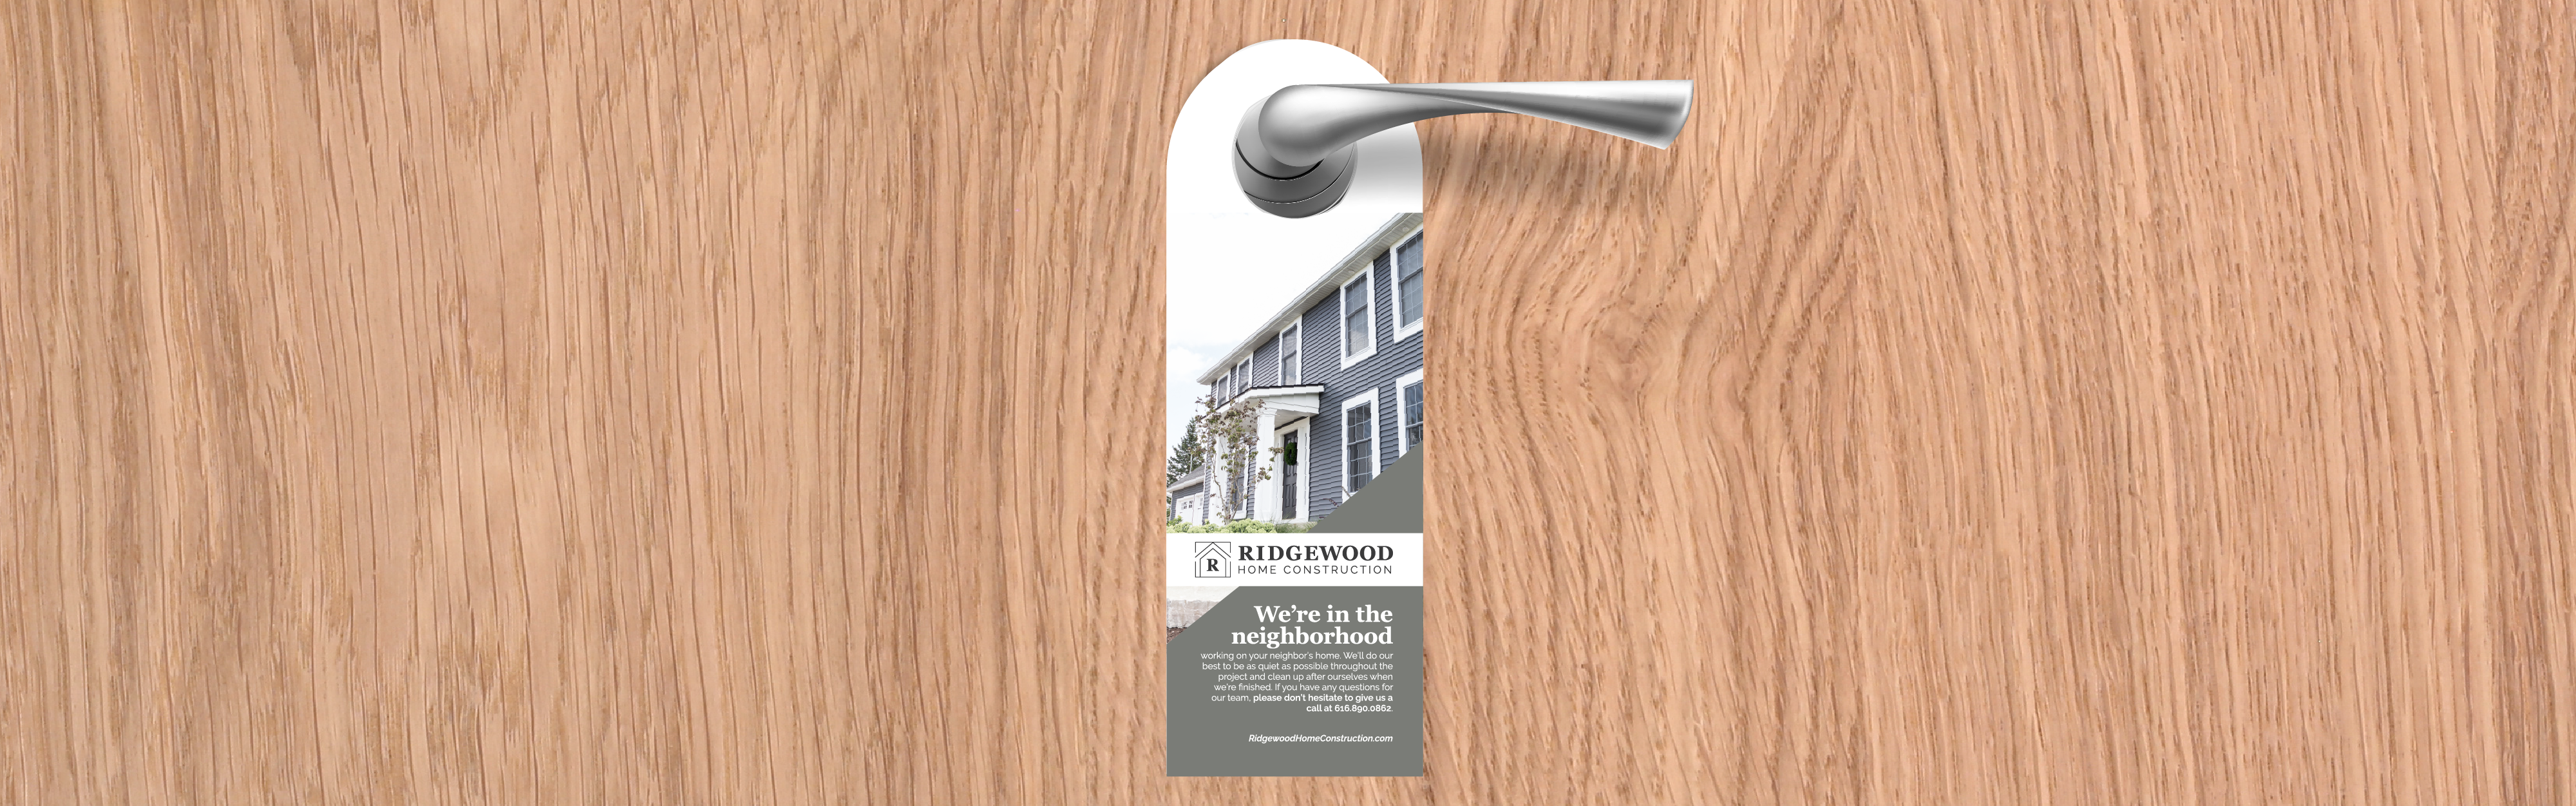 Door hanger advertisement from Ridgewood Home Construction hangs on a wooden door, stating "we're in the neighborhood.